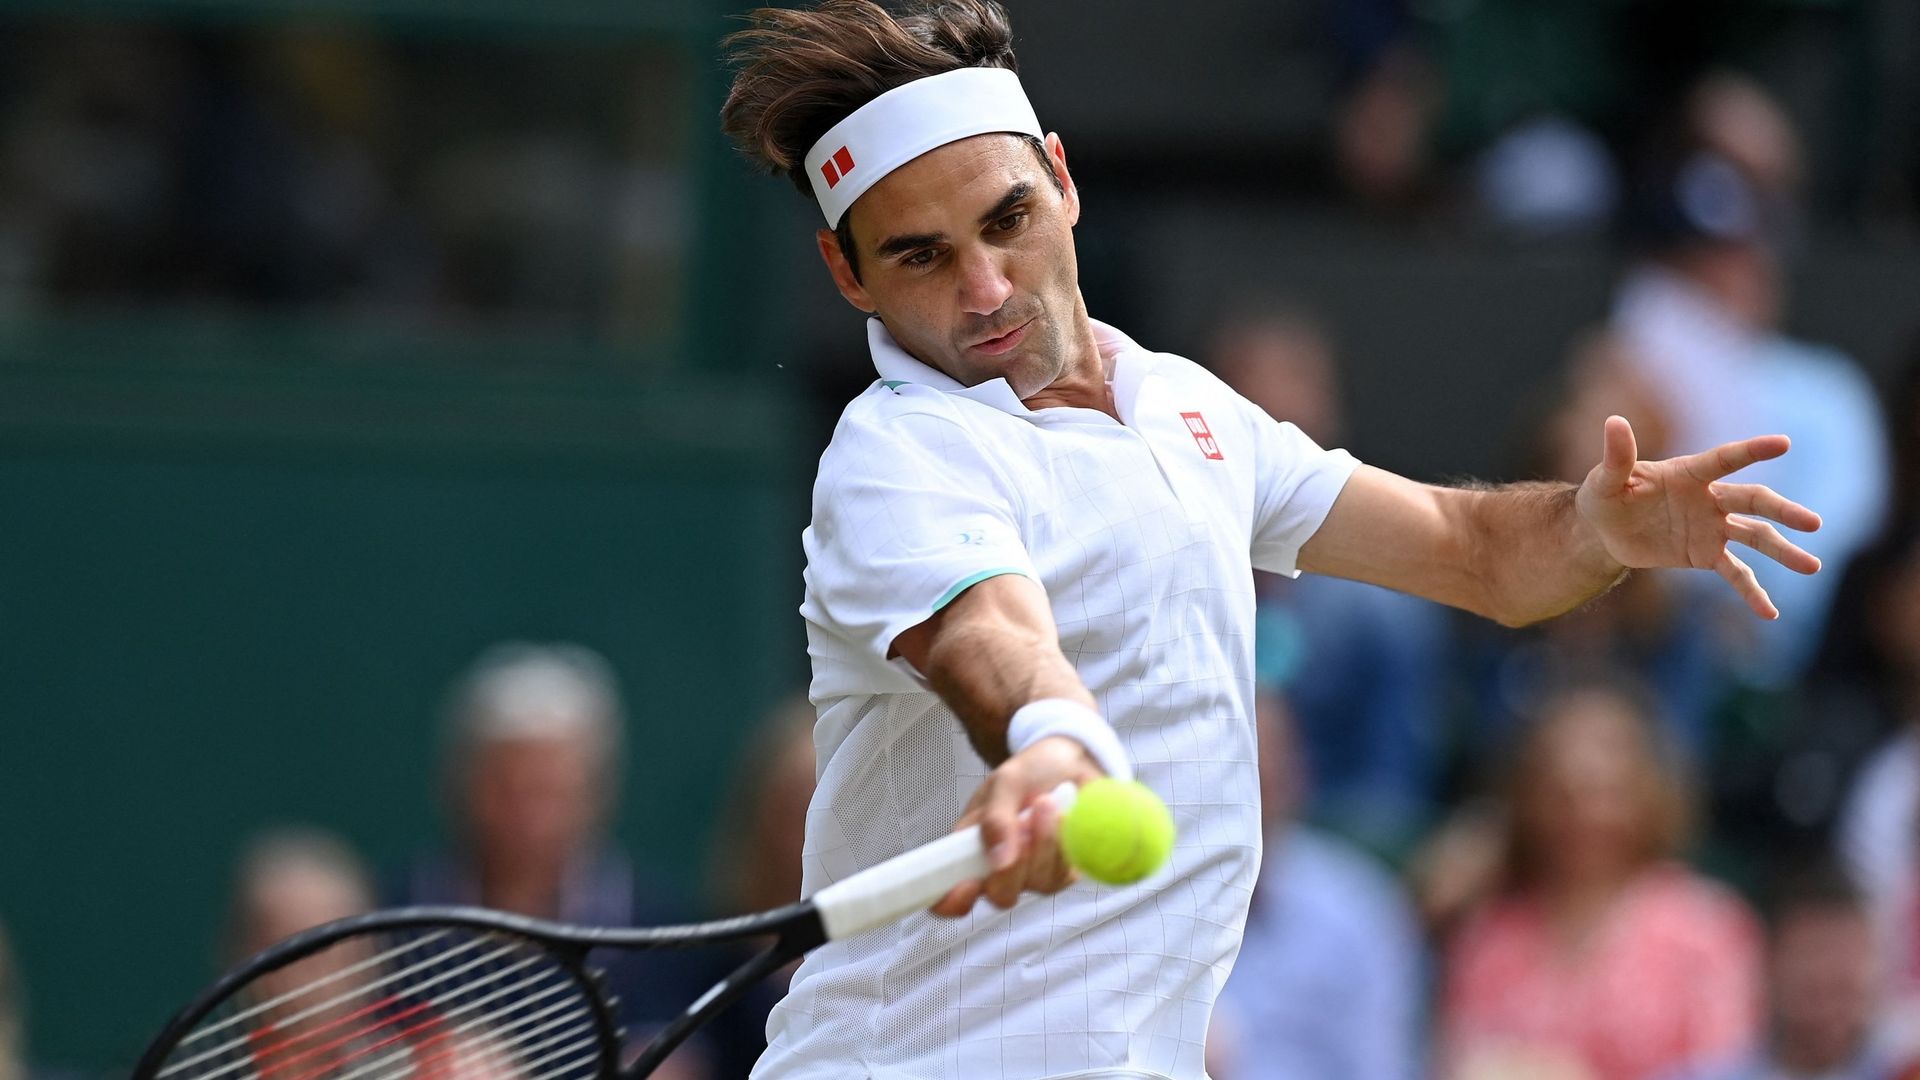 La dernière fois que Roger Federer a disputé un match officiel, c’était à Wimbledon 2021.